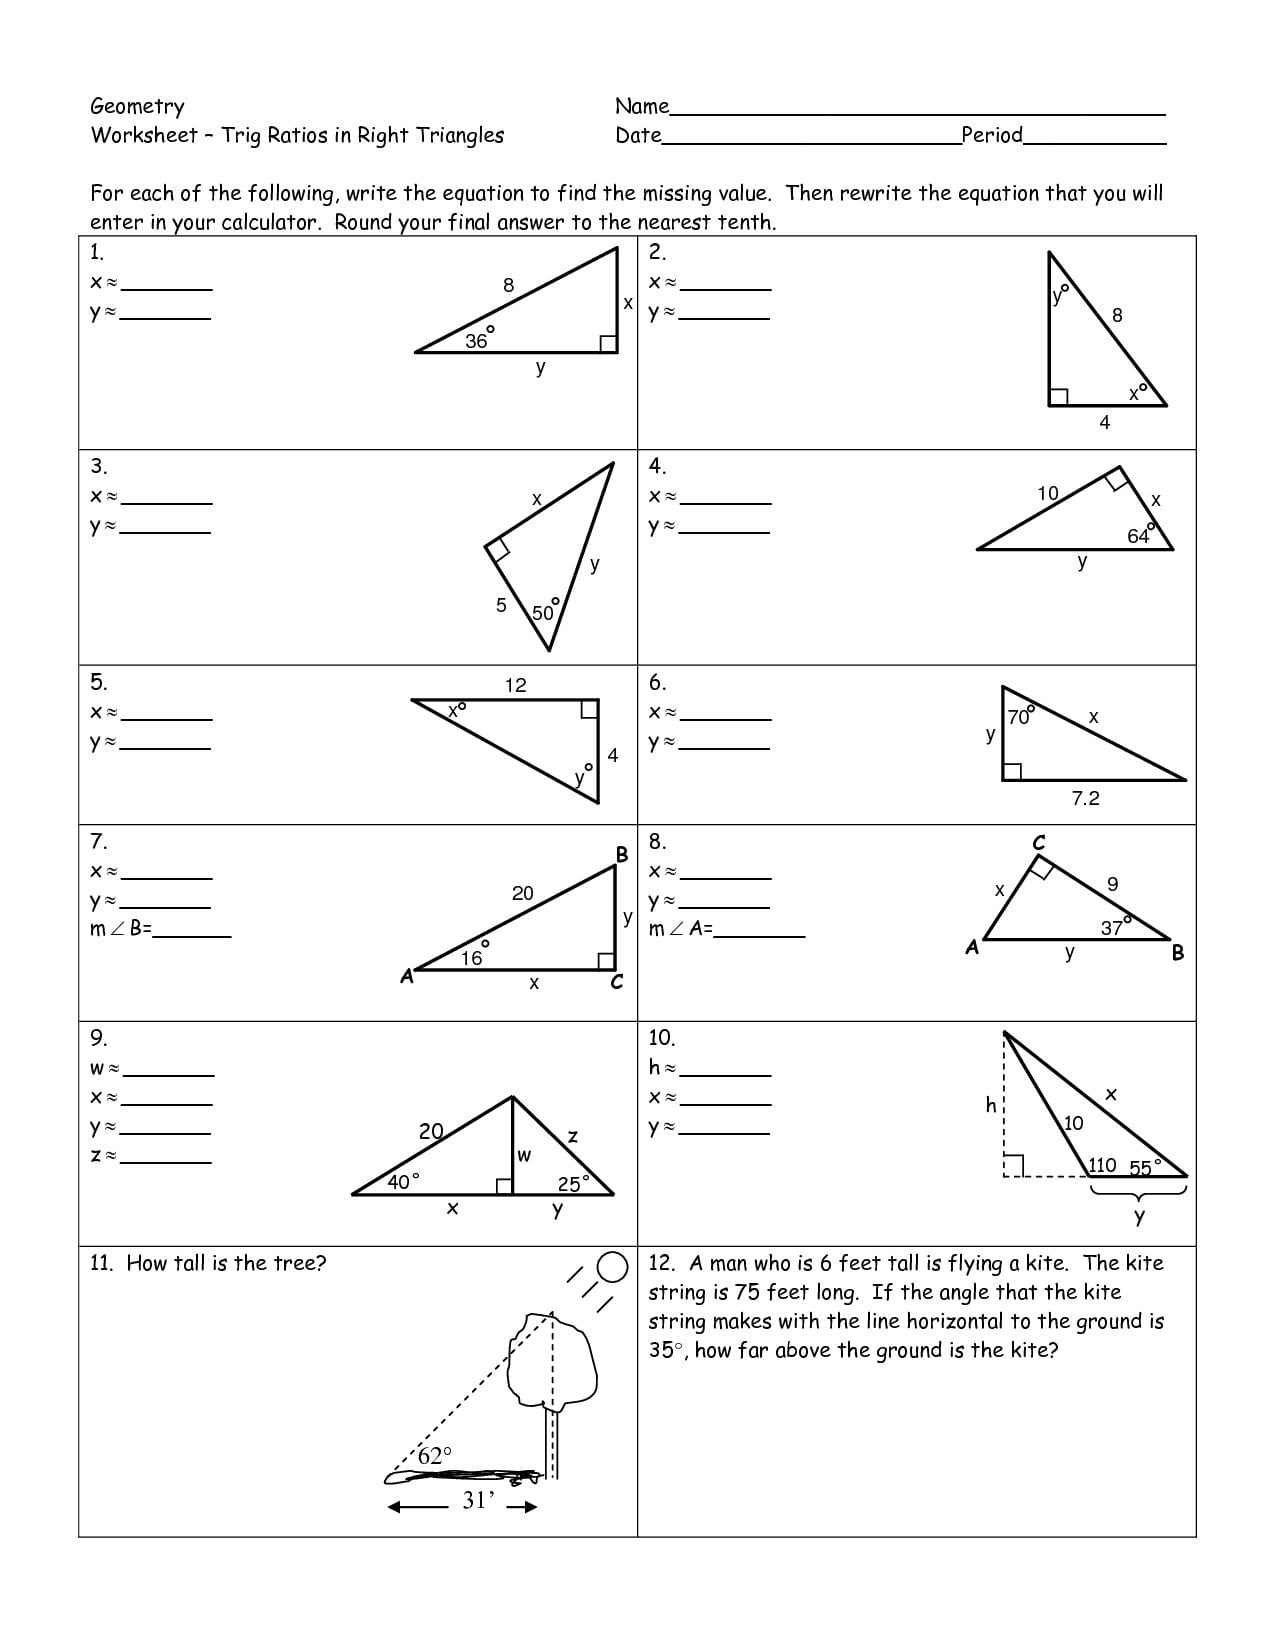 Geometry Worksheet – Trig Ratios In Right Triangles With Trigonometry Ratios In Right Triangles Worksheet